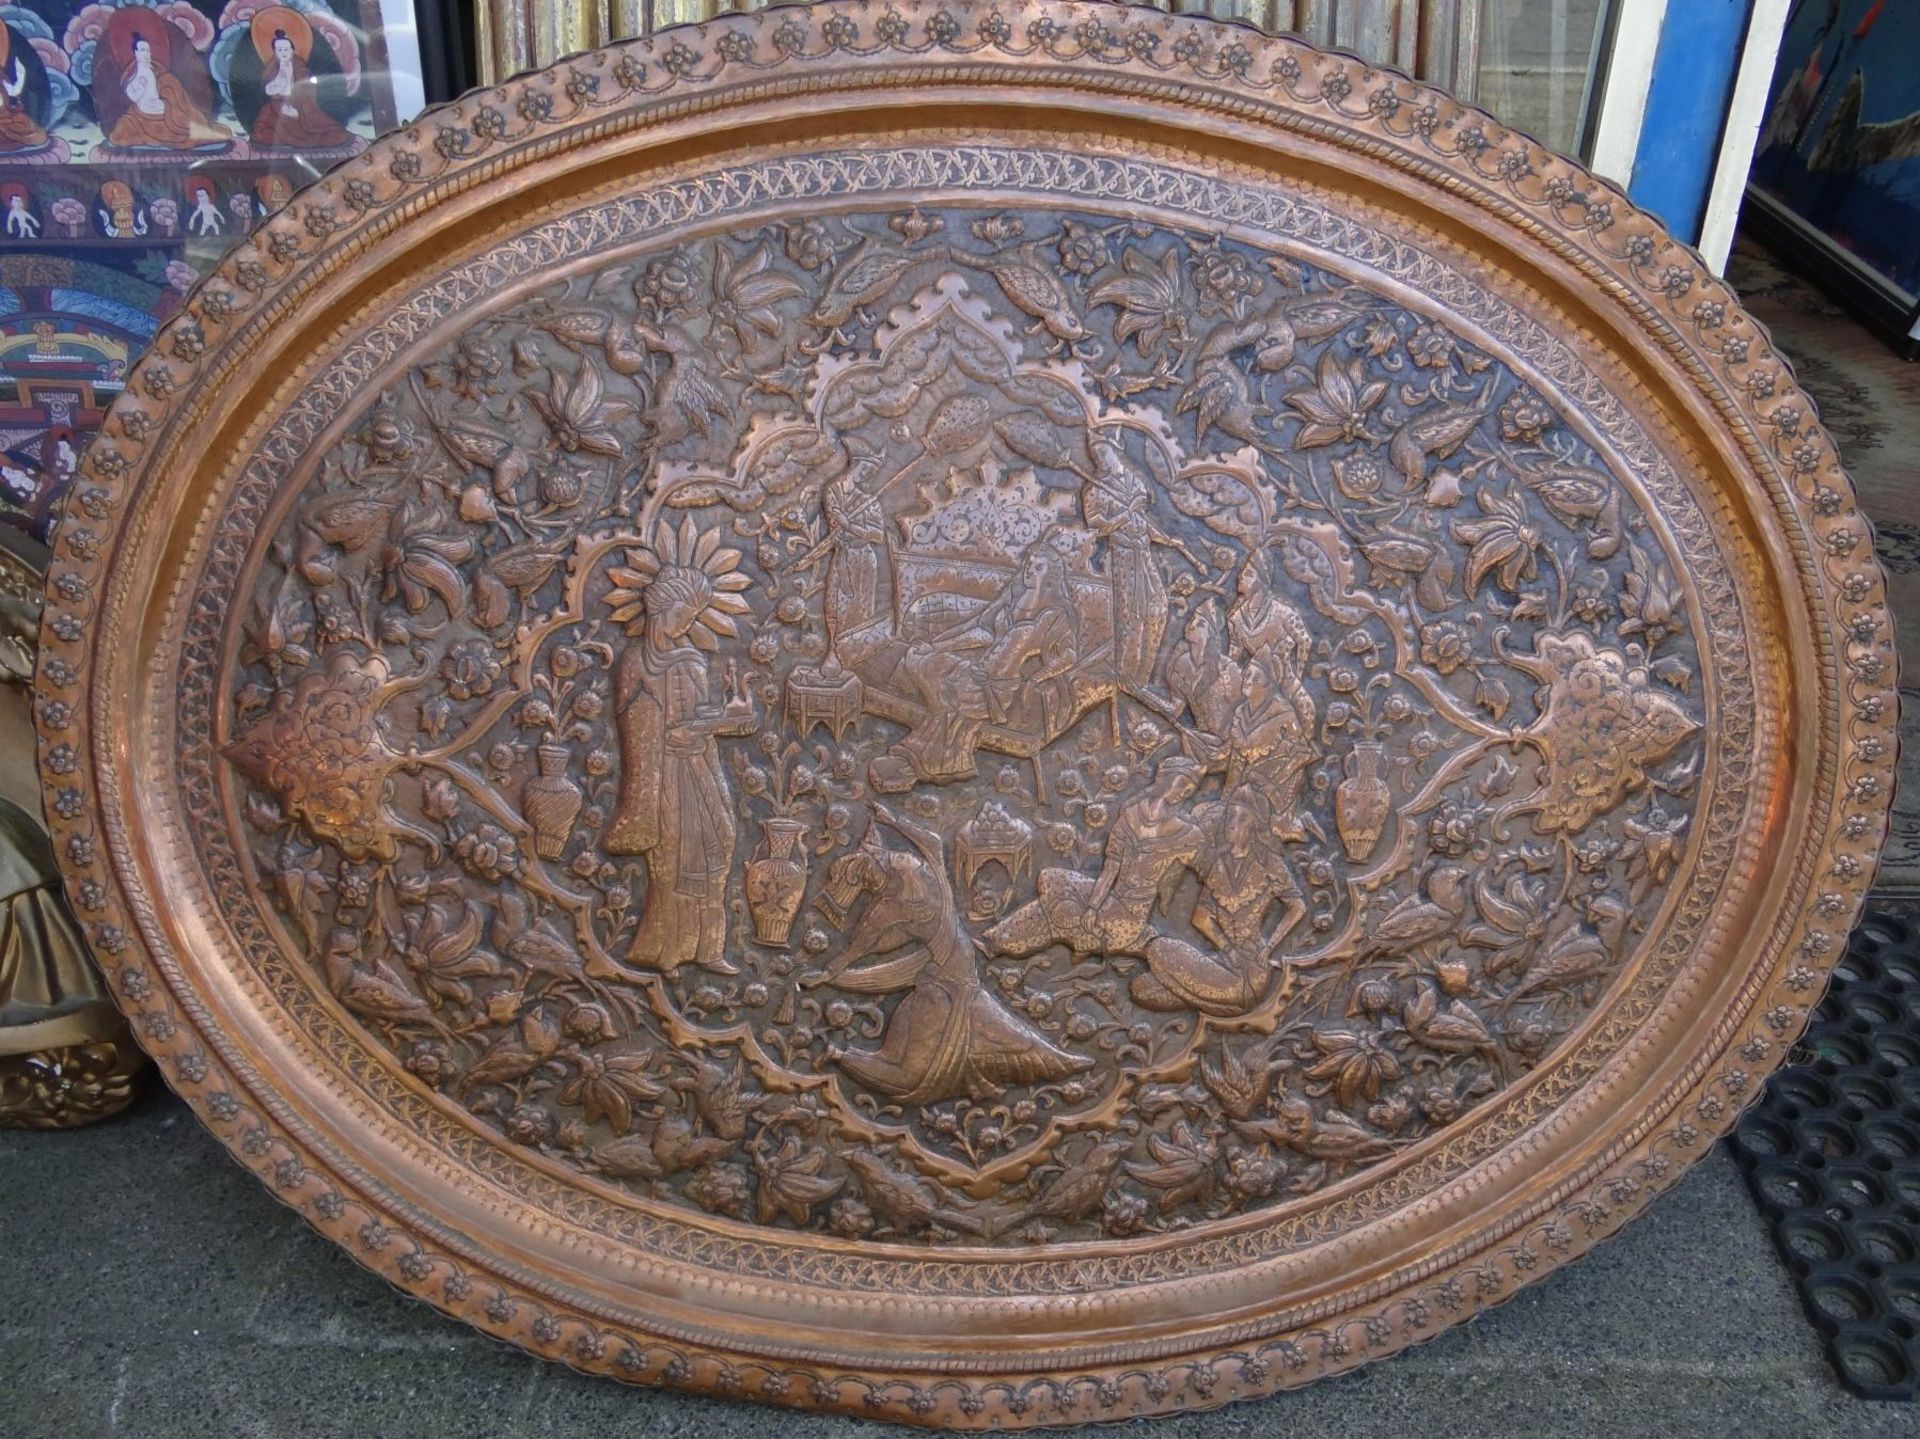 grosse ovale Kupferplatte, handgetriebene Haremszene, Alters-u. Gebrauchsspuren, 75x95 cm, wohl